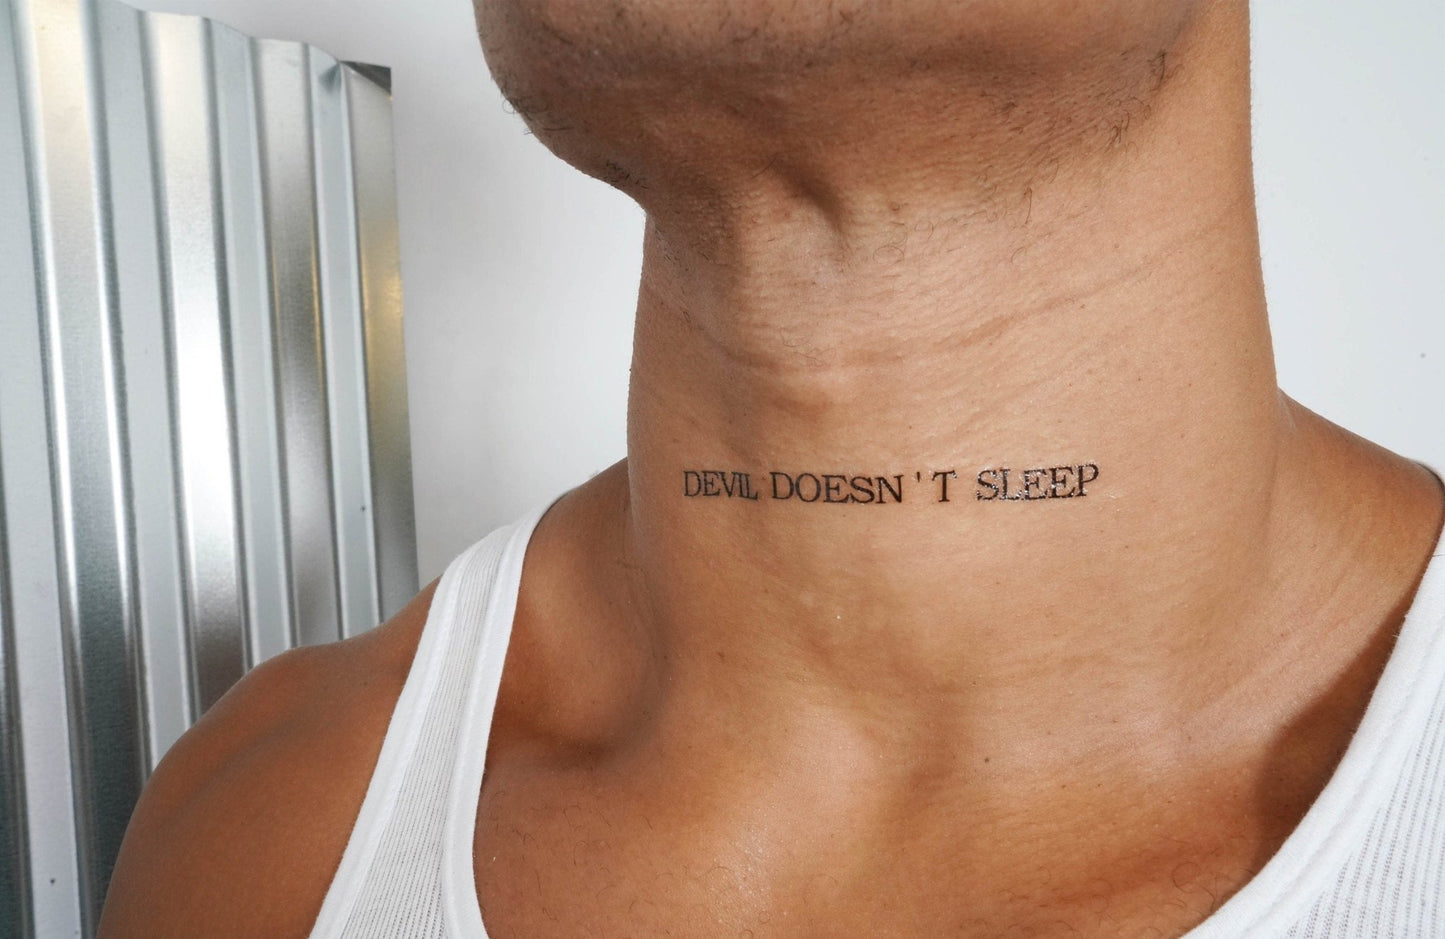 Devil Doesn't Sleep Tattoo, temporary tattoo